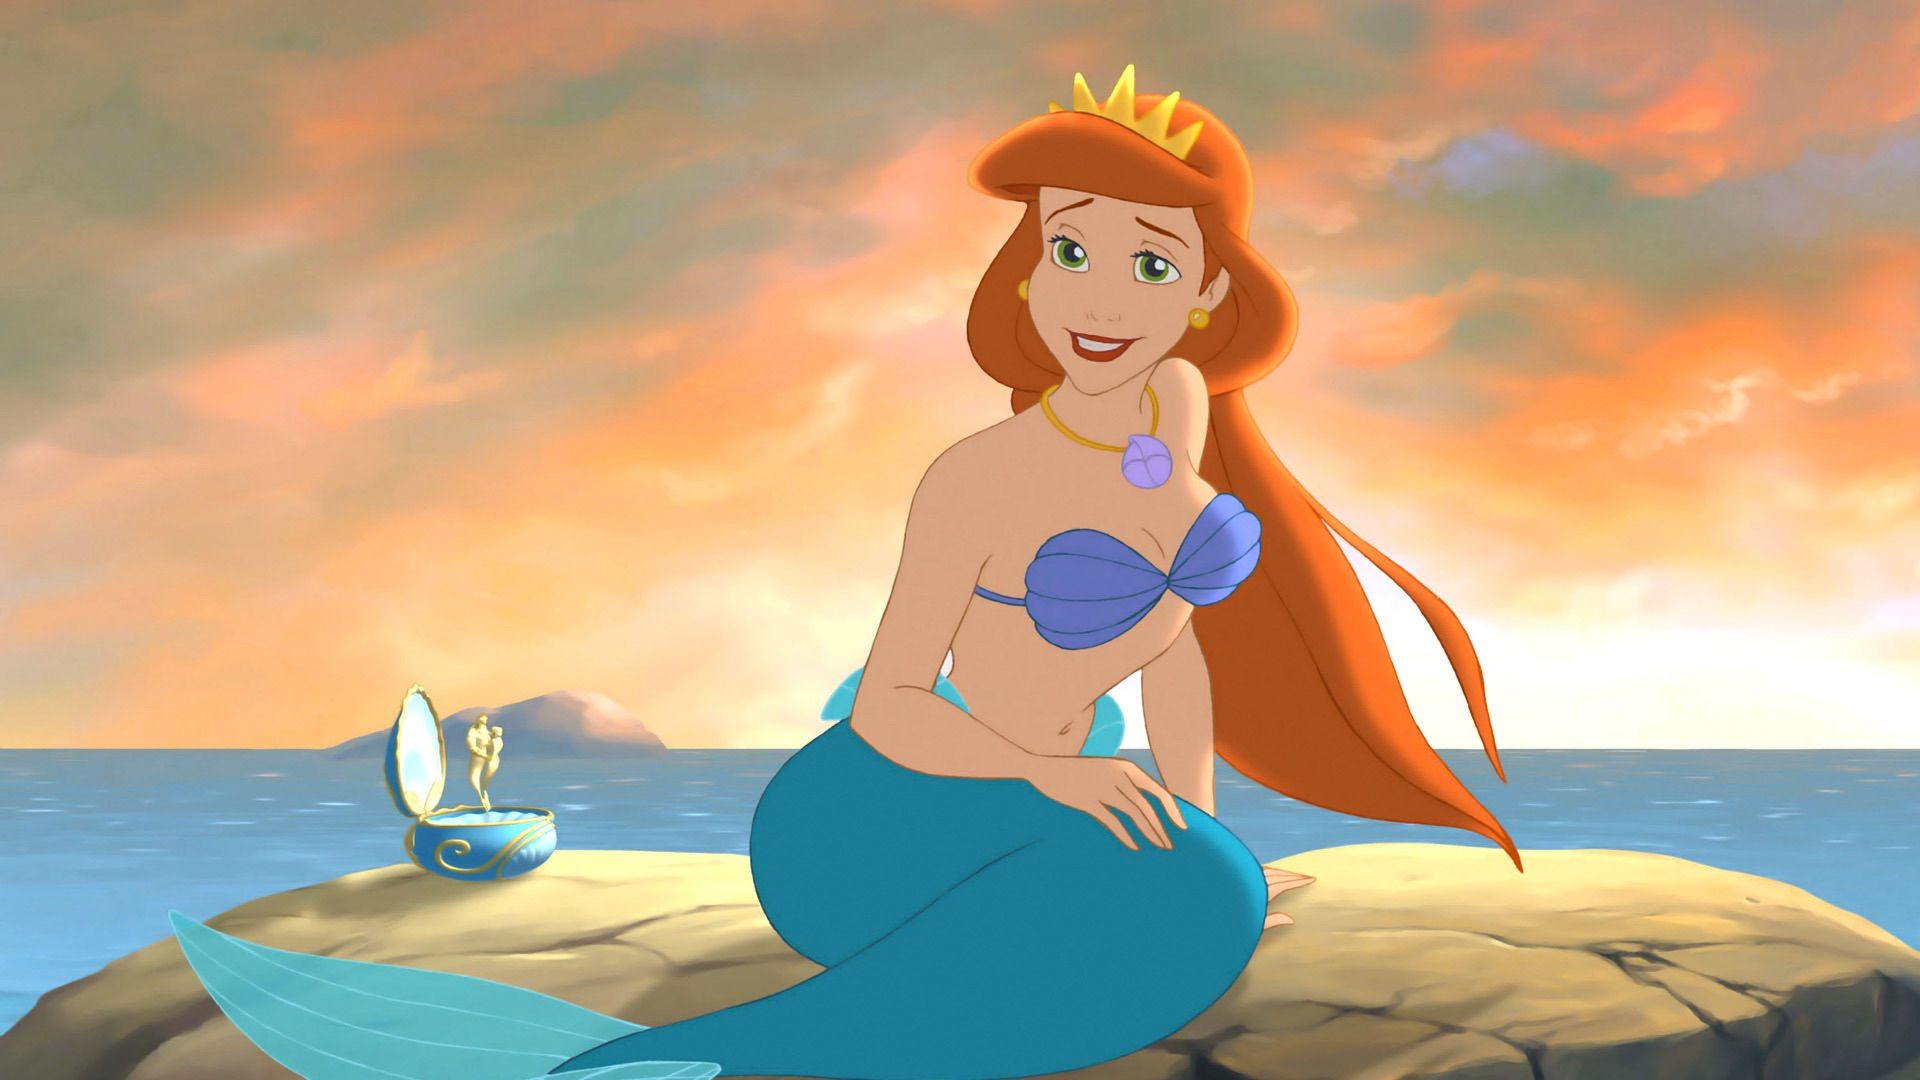 The Little Mermaid: Ariel's Beginning Backdrop